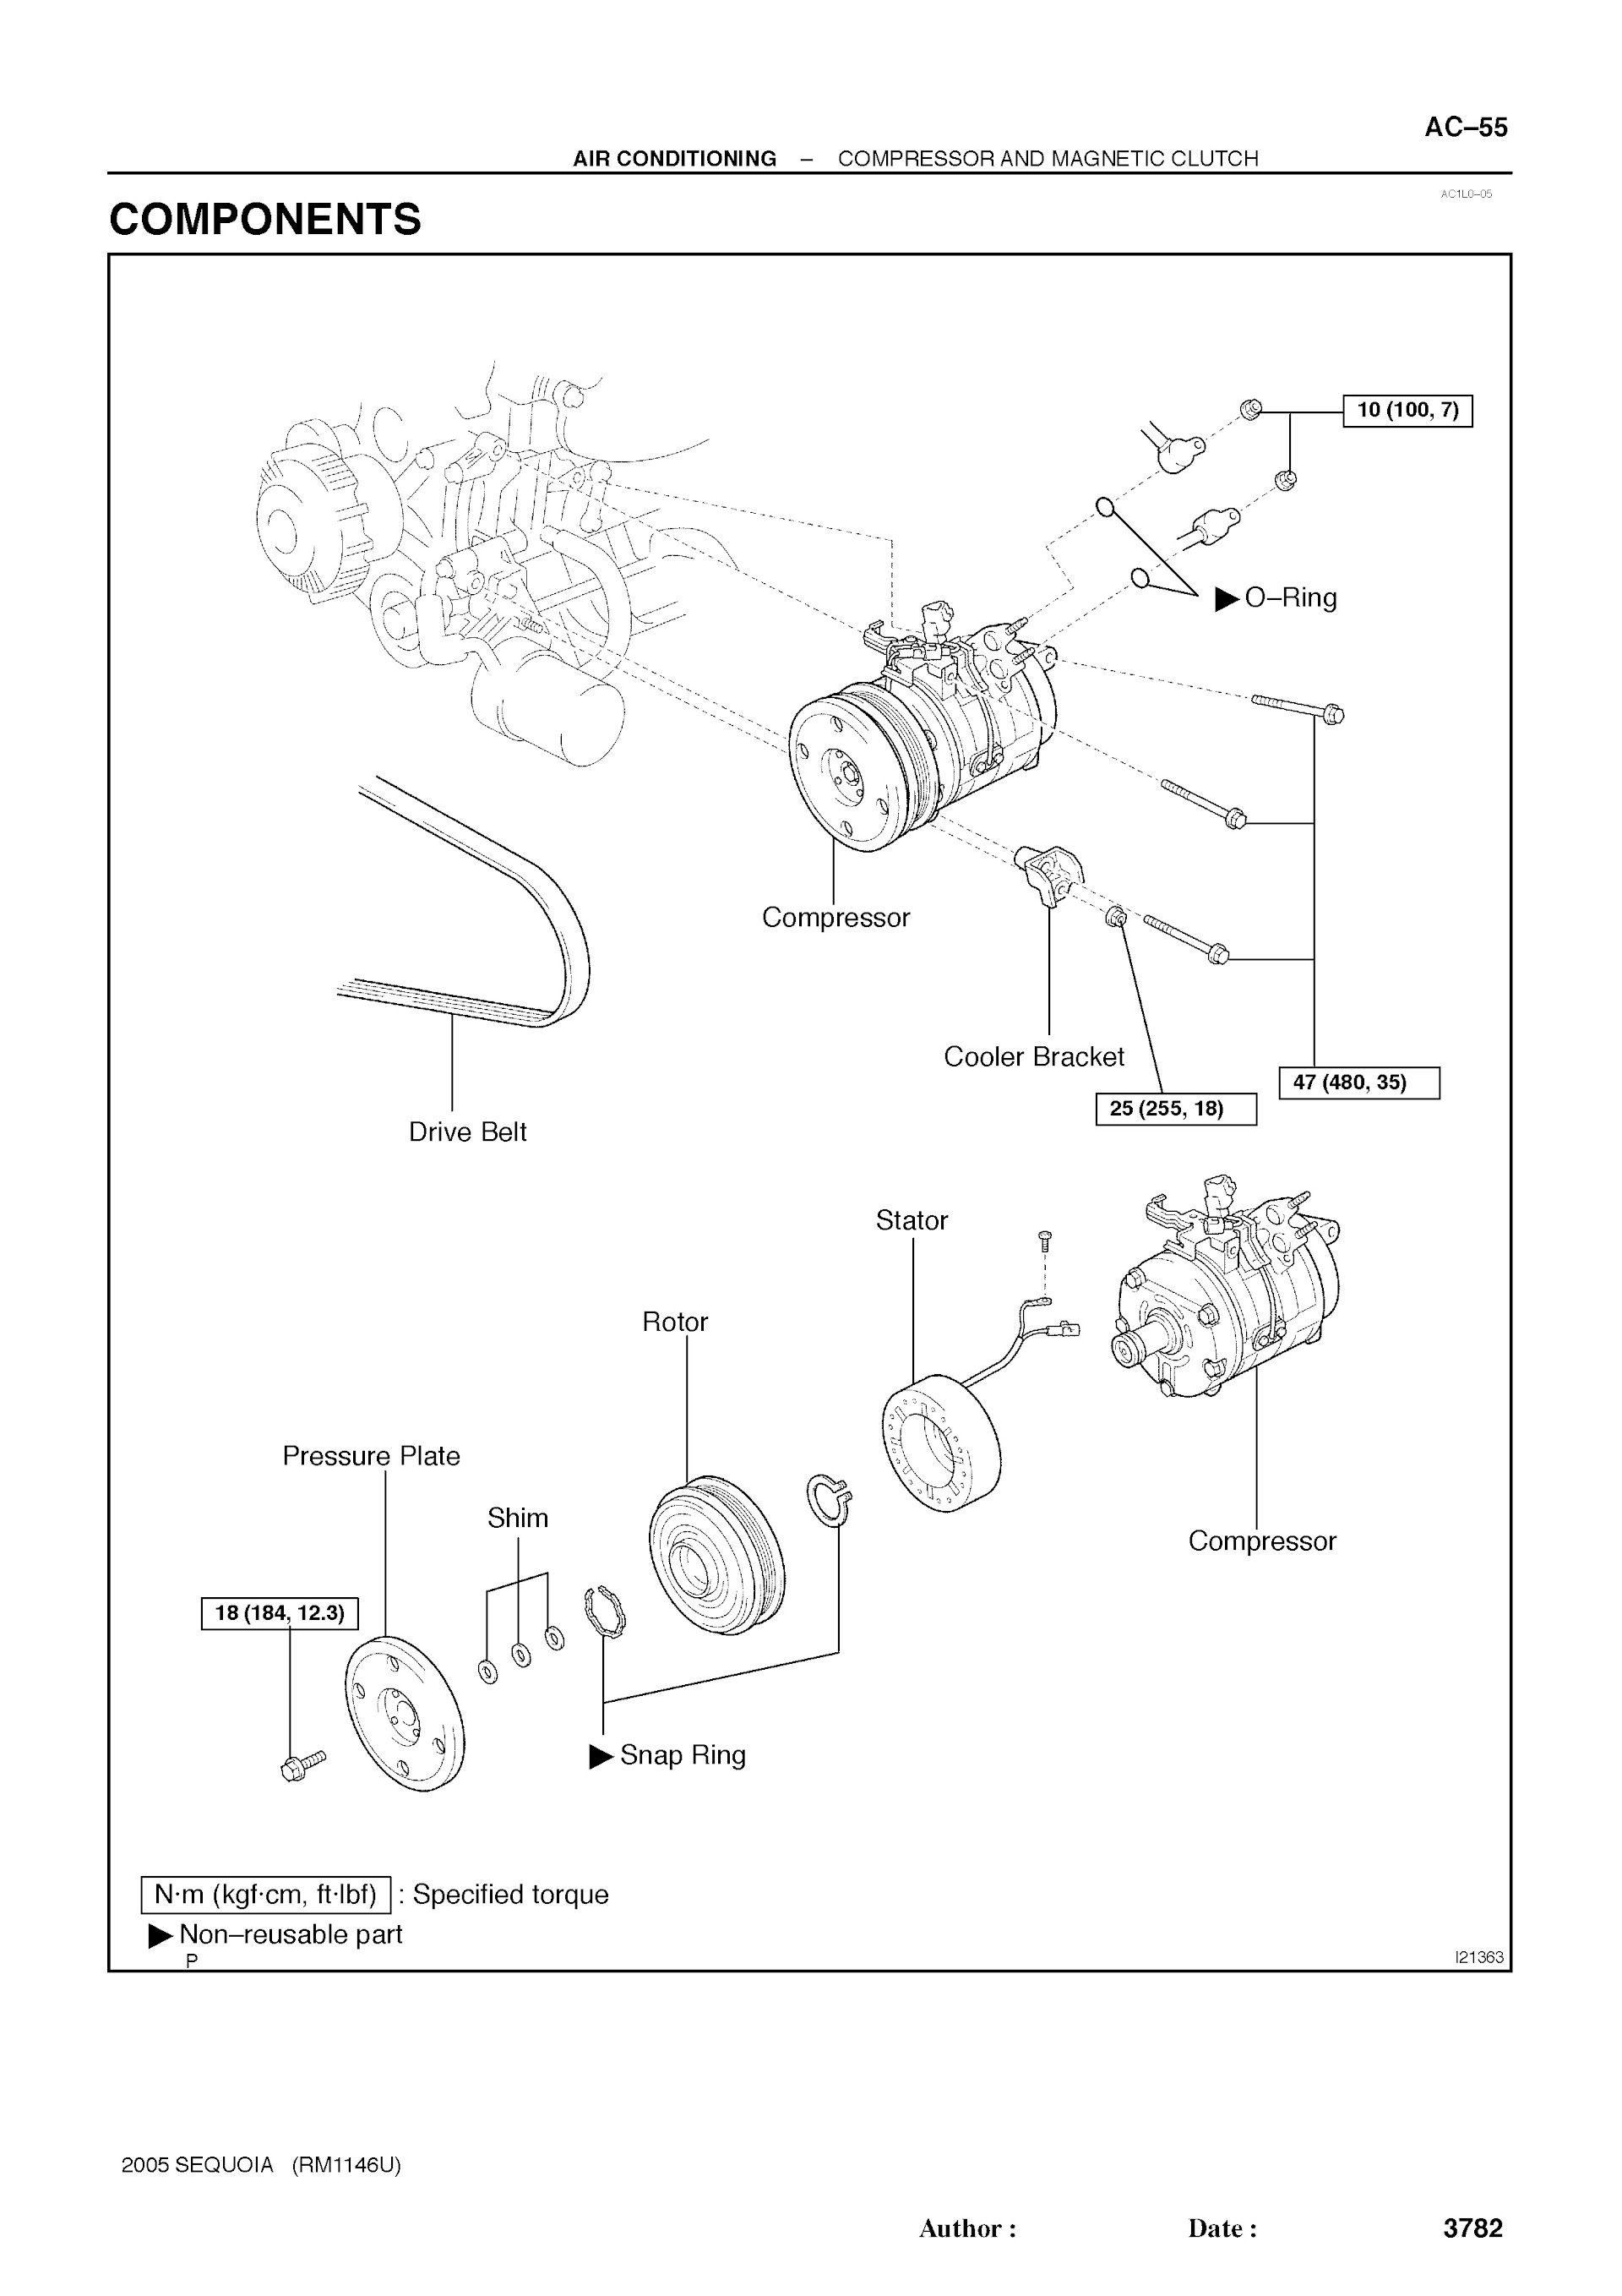 2007 Toyota Sequoia Repair Manual, air Conditioning